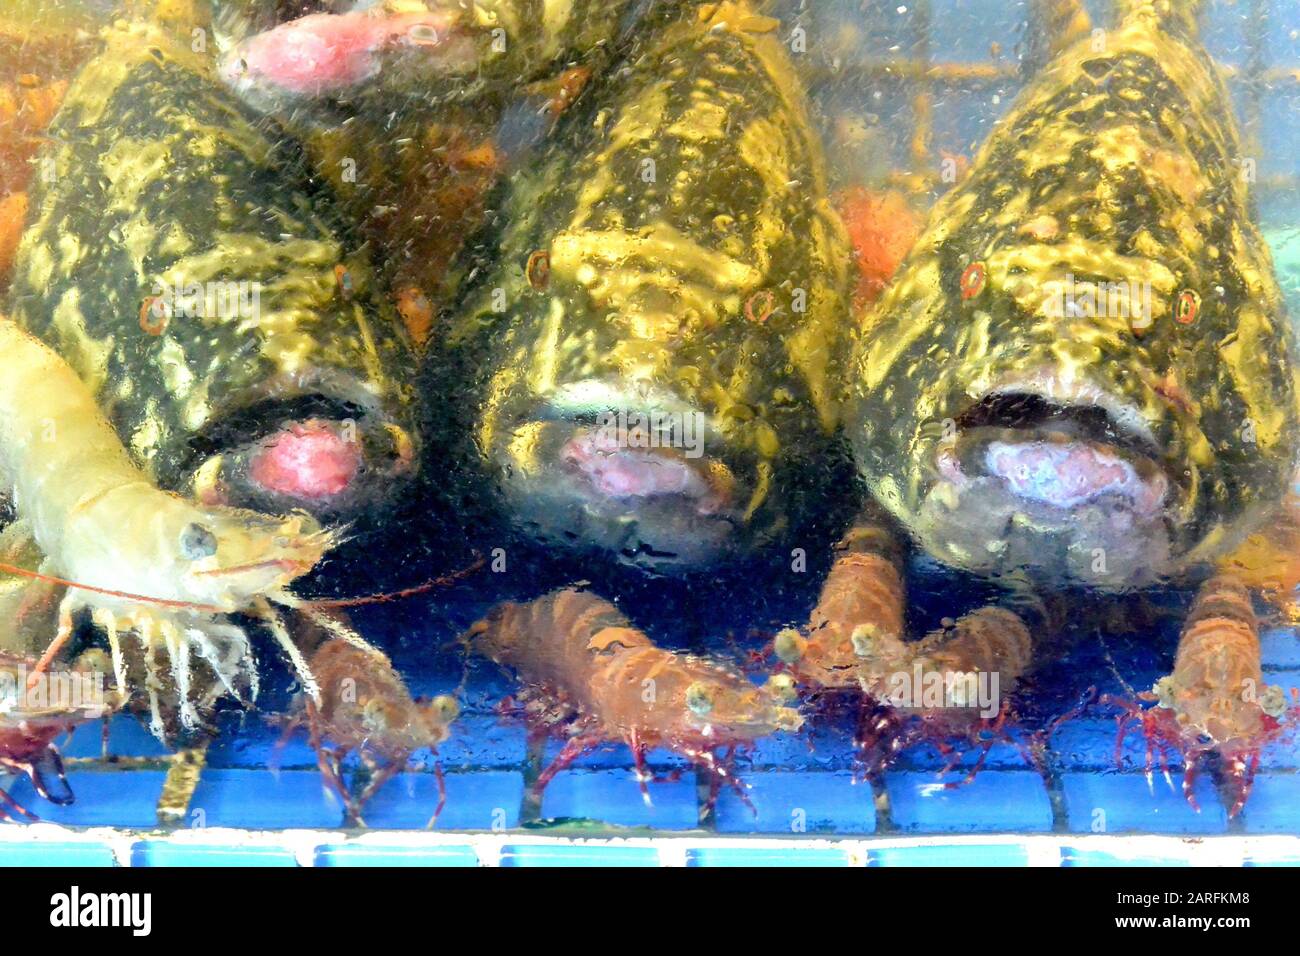 Vendita di mare Reef Stonefish e gamberetti in un mercato acquario, linea blu, Sihanoukville, Cambogia, Sud-est asiatico. Foto Stock